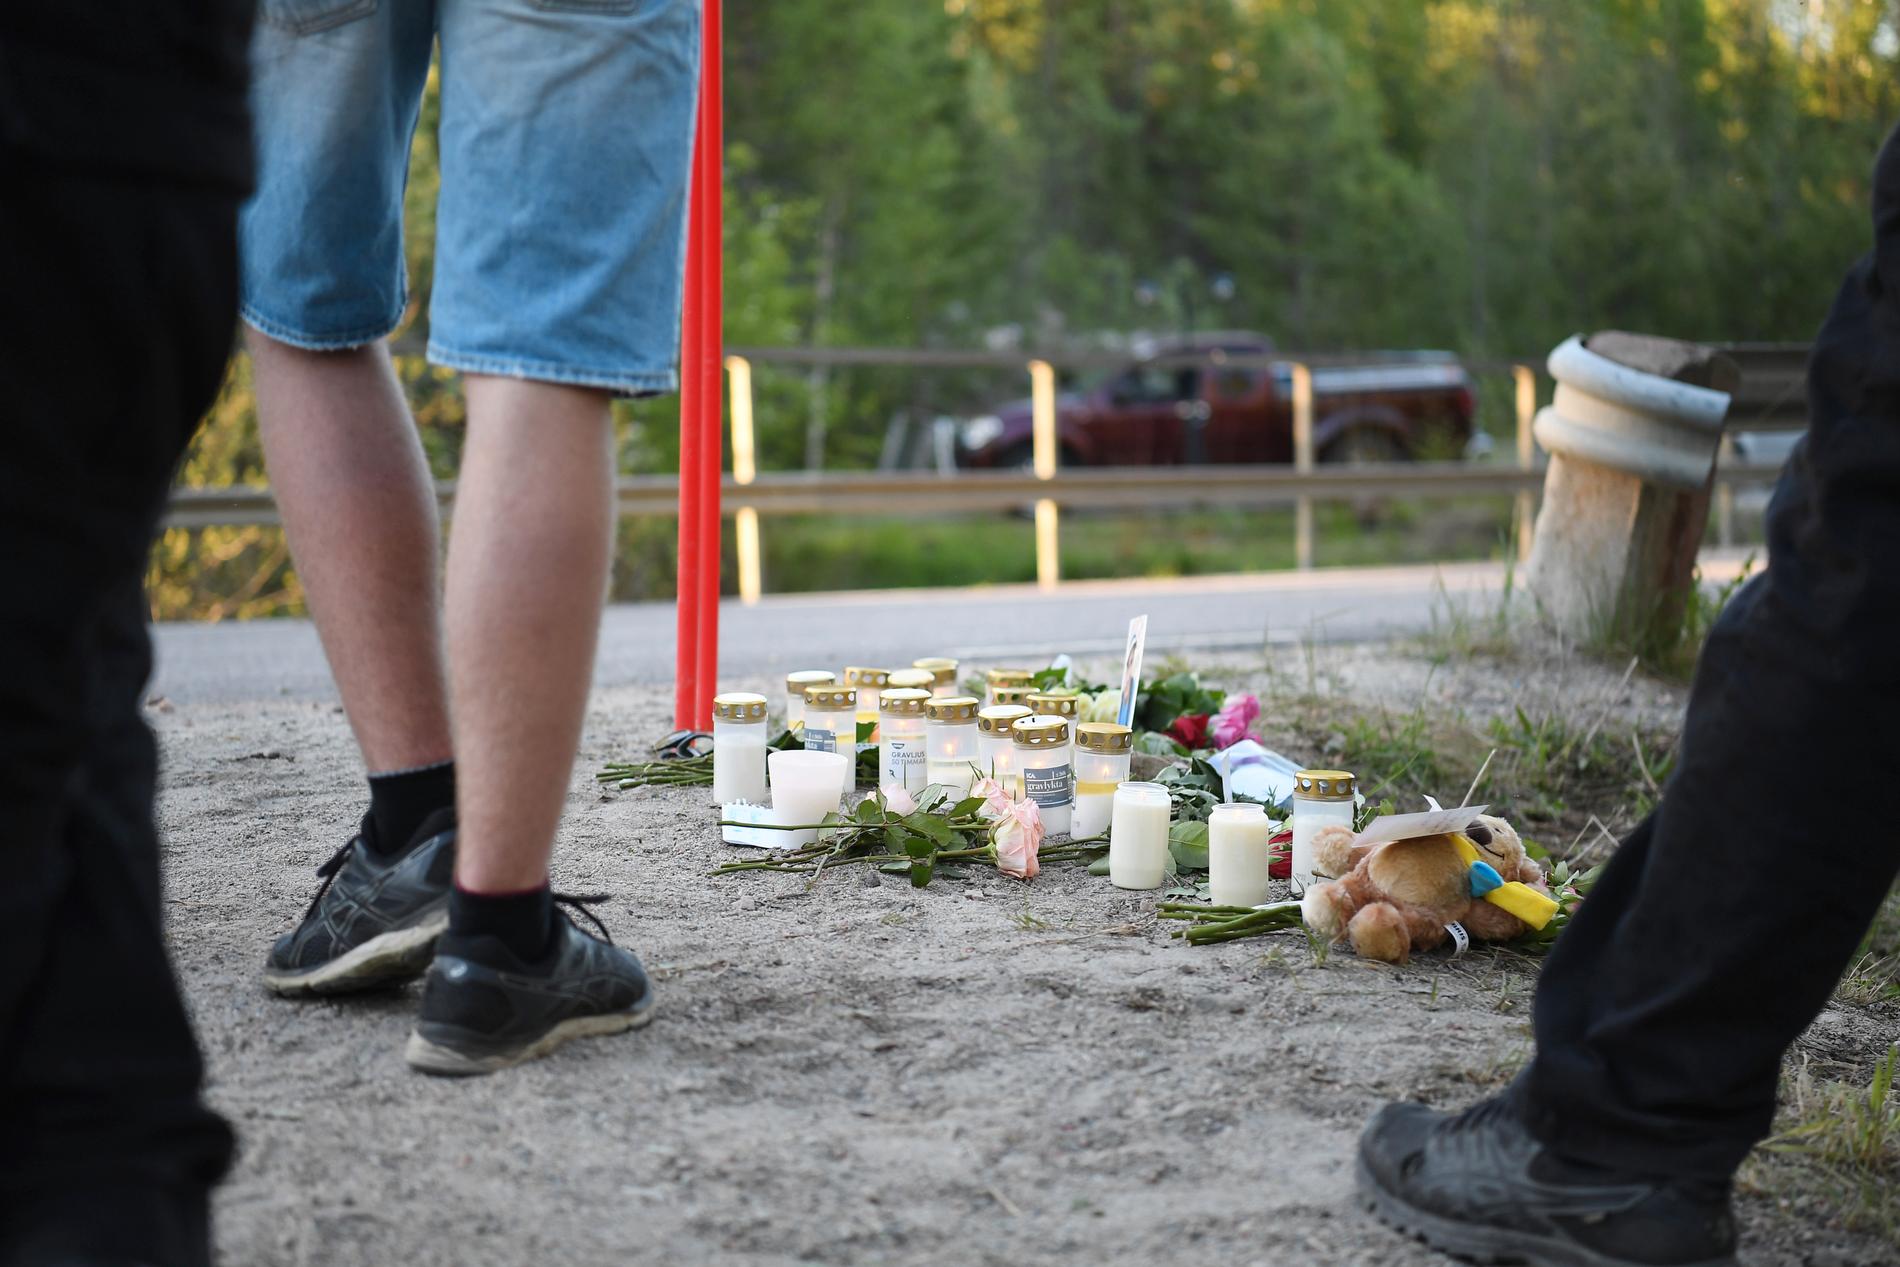 Fyra 16-åriga pojkar omkom i samband med en singelolycka vid Sörfors strax utanför Sundsvall. Ljus vid olycksplatsen.